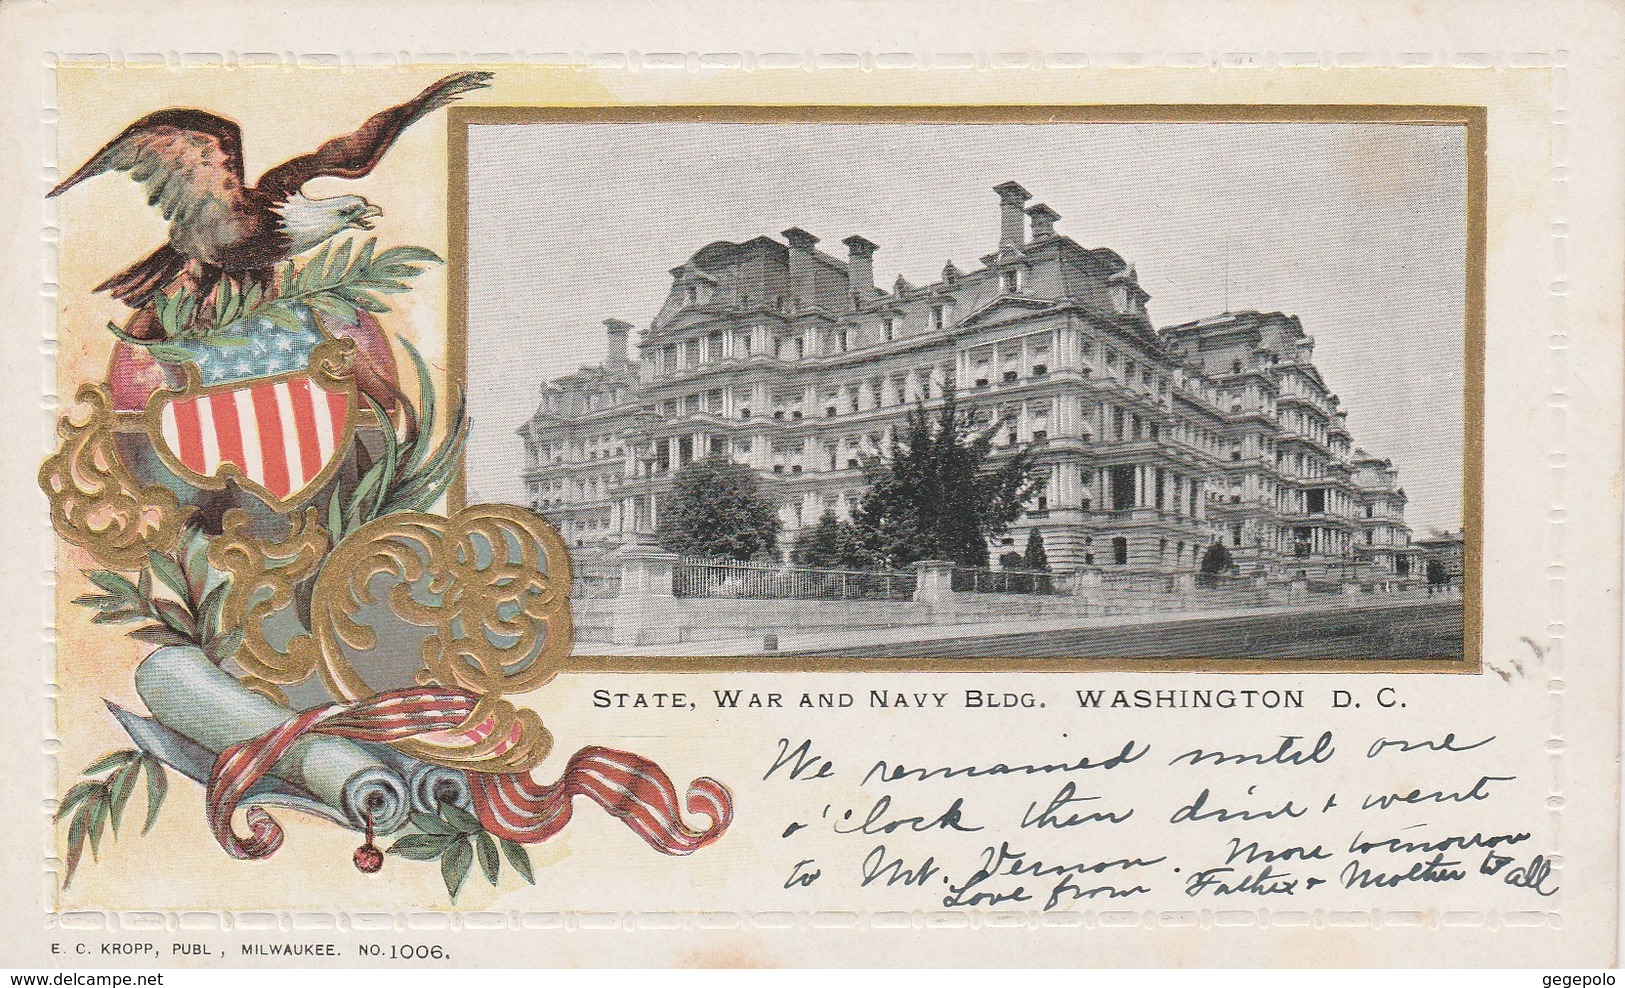 WASHINGTON D.C. - 5 cartes postales écrites en 1902 à destination de New York City  ( cartes en relief rares )